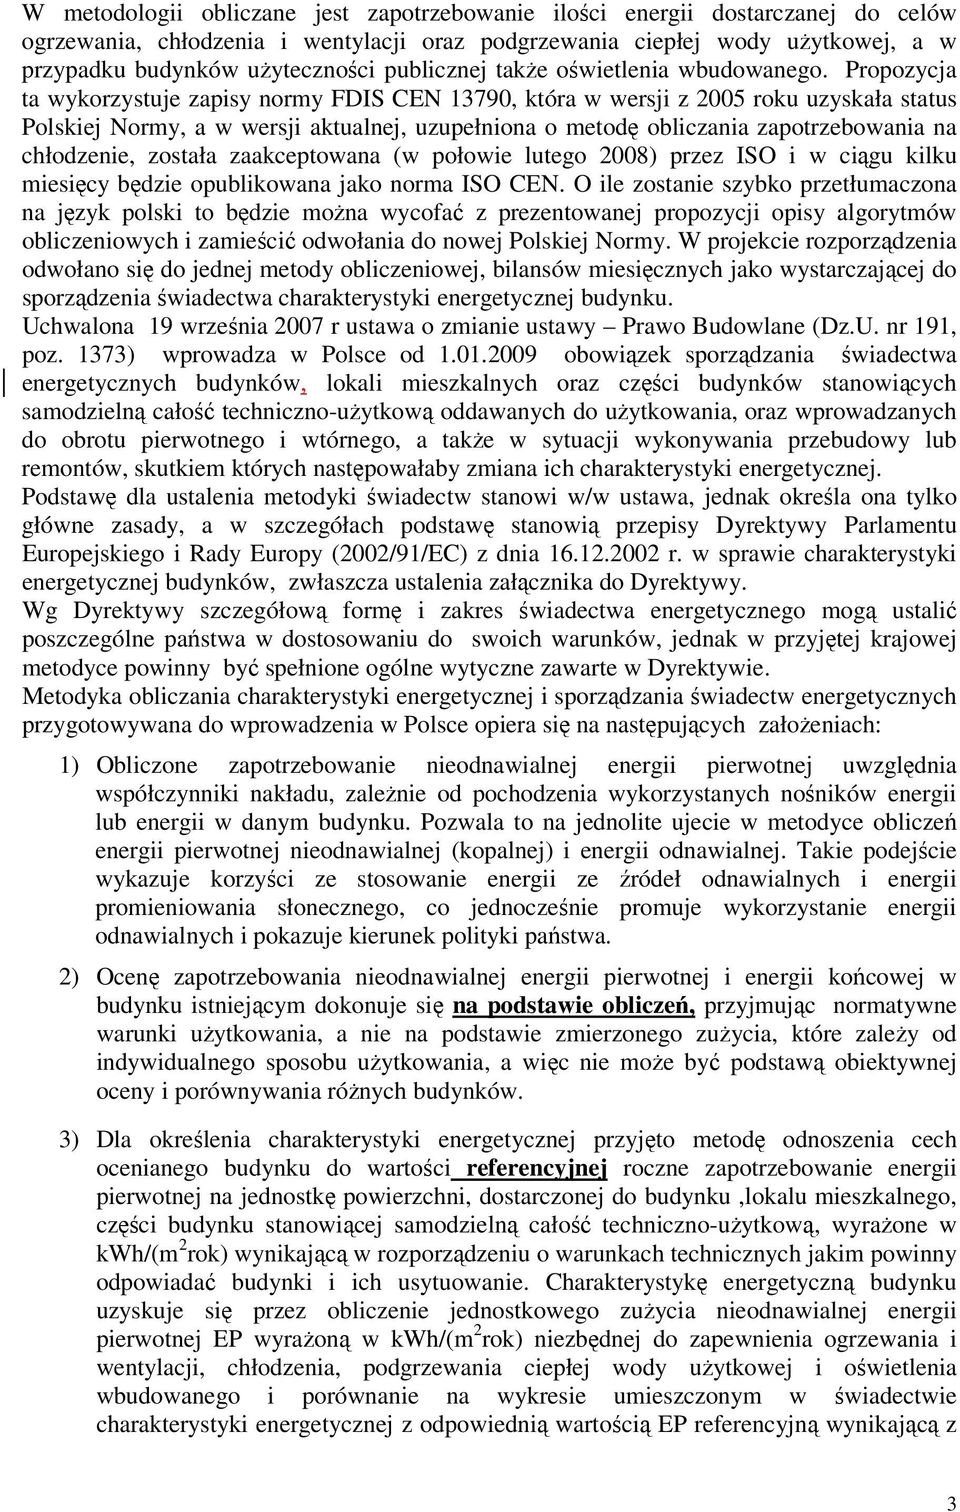 Propozycja ta wykorzystuje zapisy normy FDIS CEN 13790, która w wersji z 2005 roku uzyskała status Polskiej Normy, a w wersji aktualnej, uzupełniona o metodę obliczania zapotrzebowania na chłodzenie,